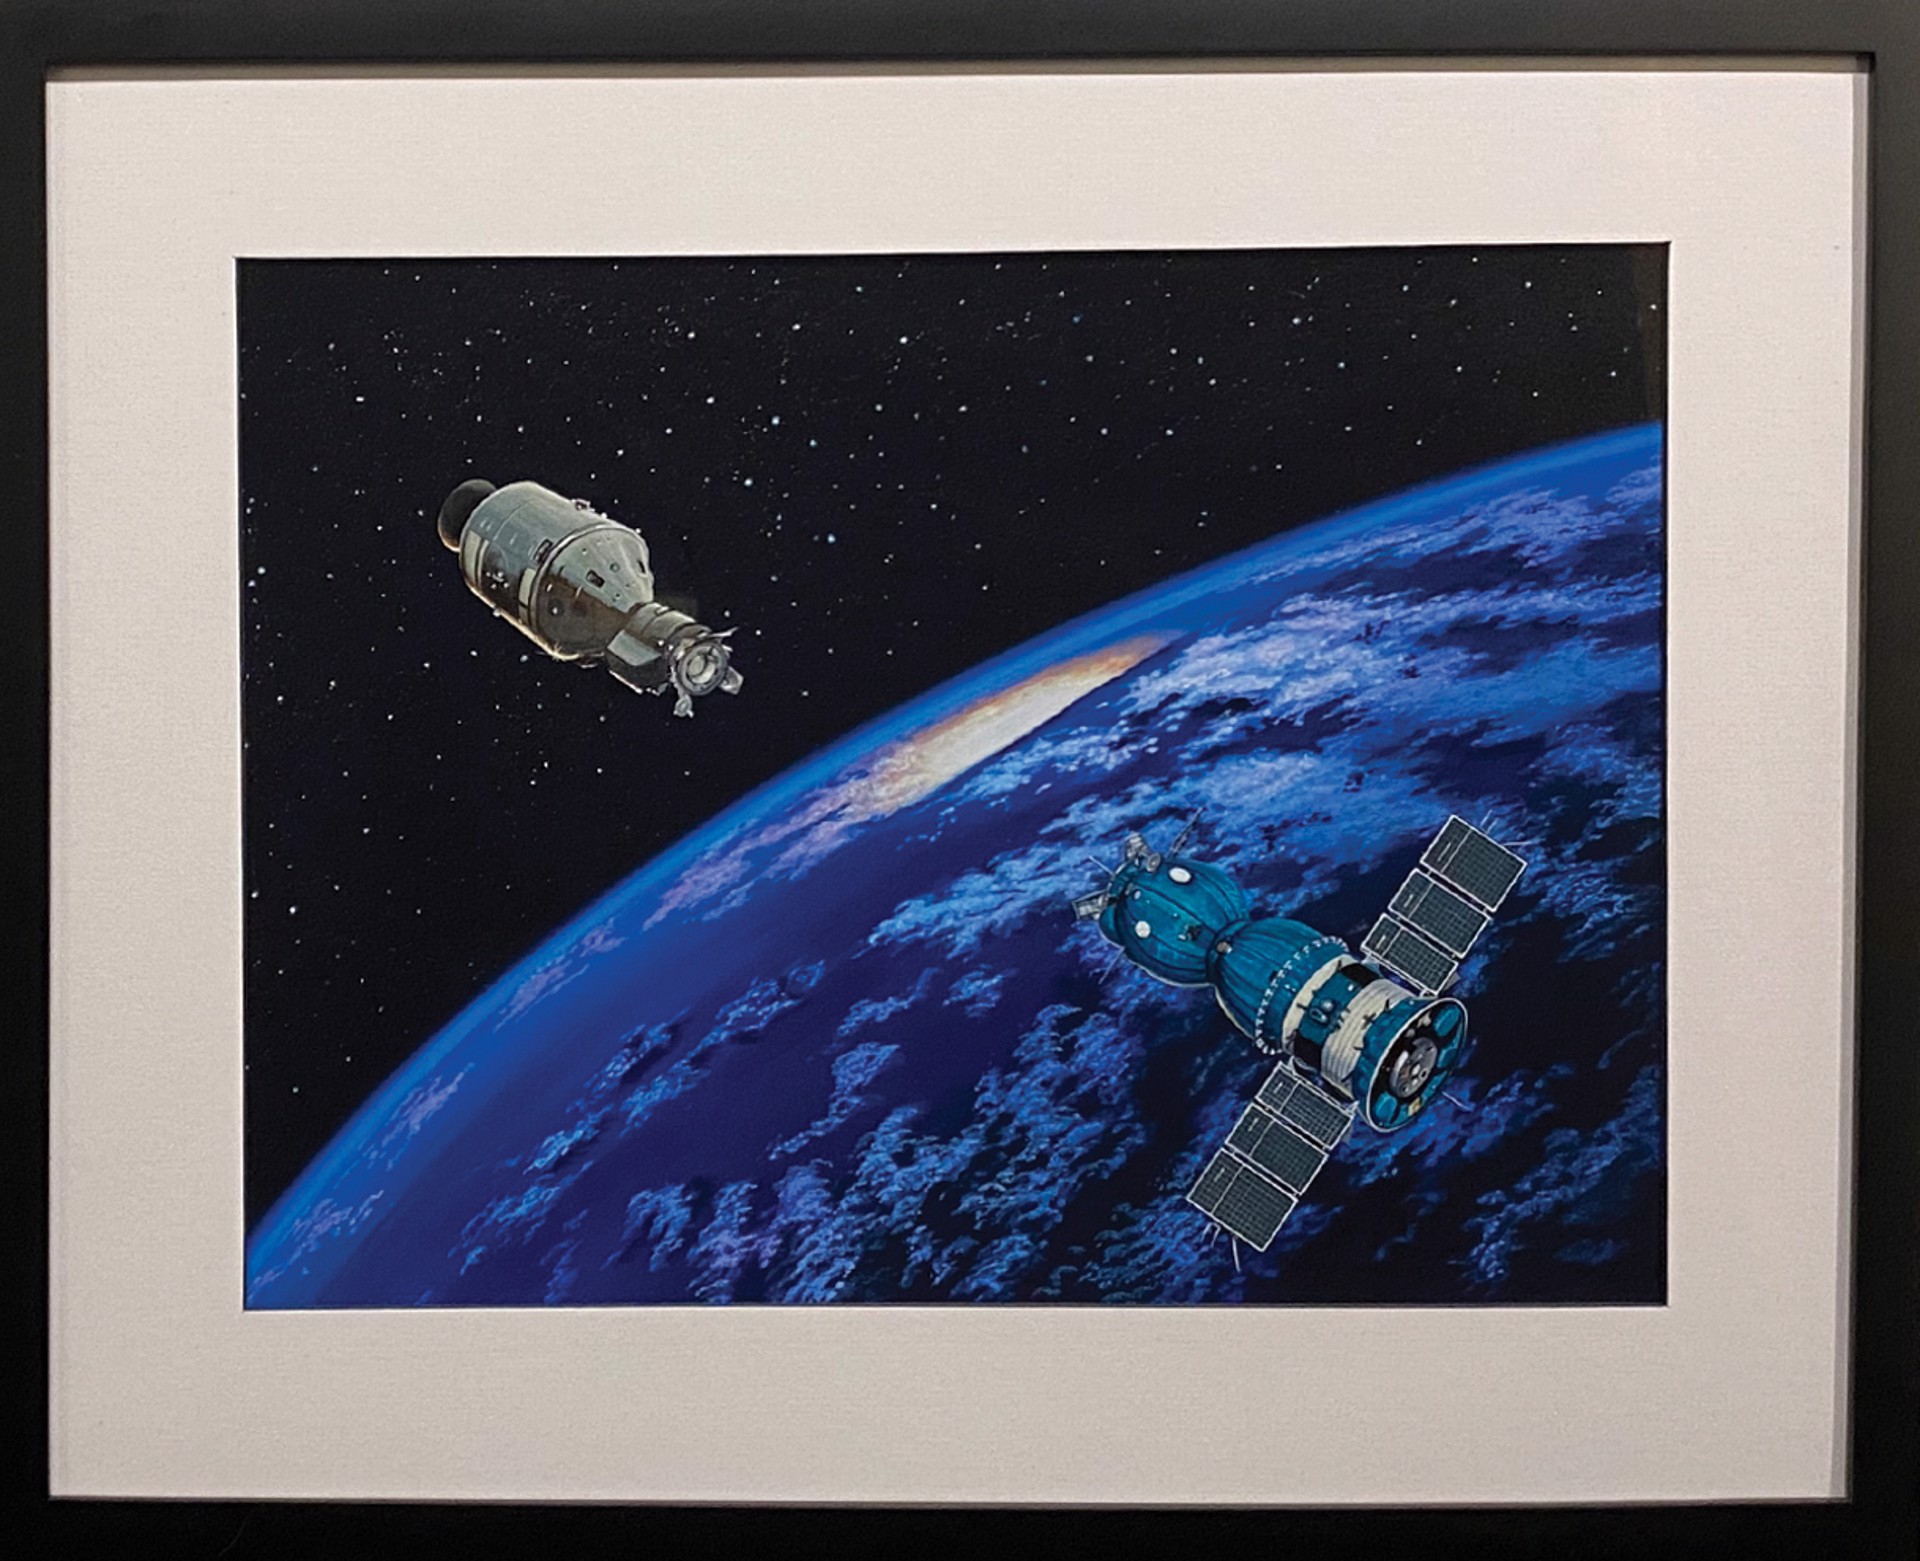 Handshake in Space “Handshake in Space by Sheri Tan” by Higgins Bond